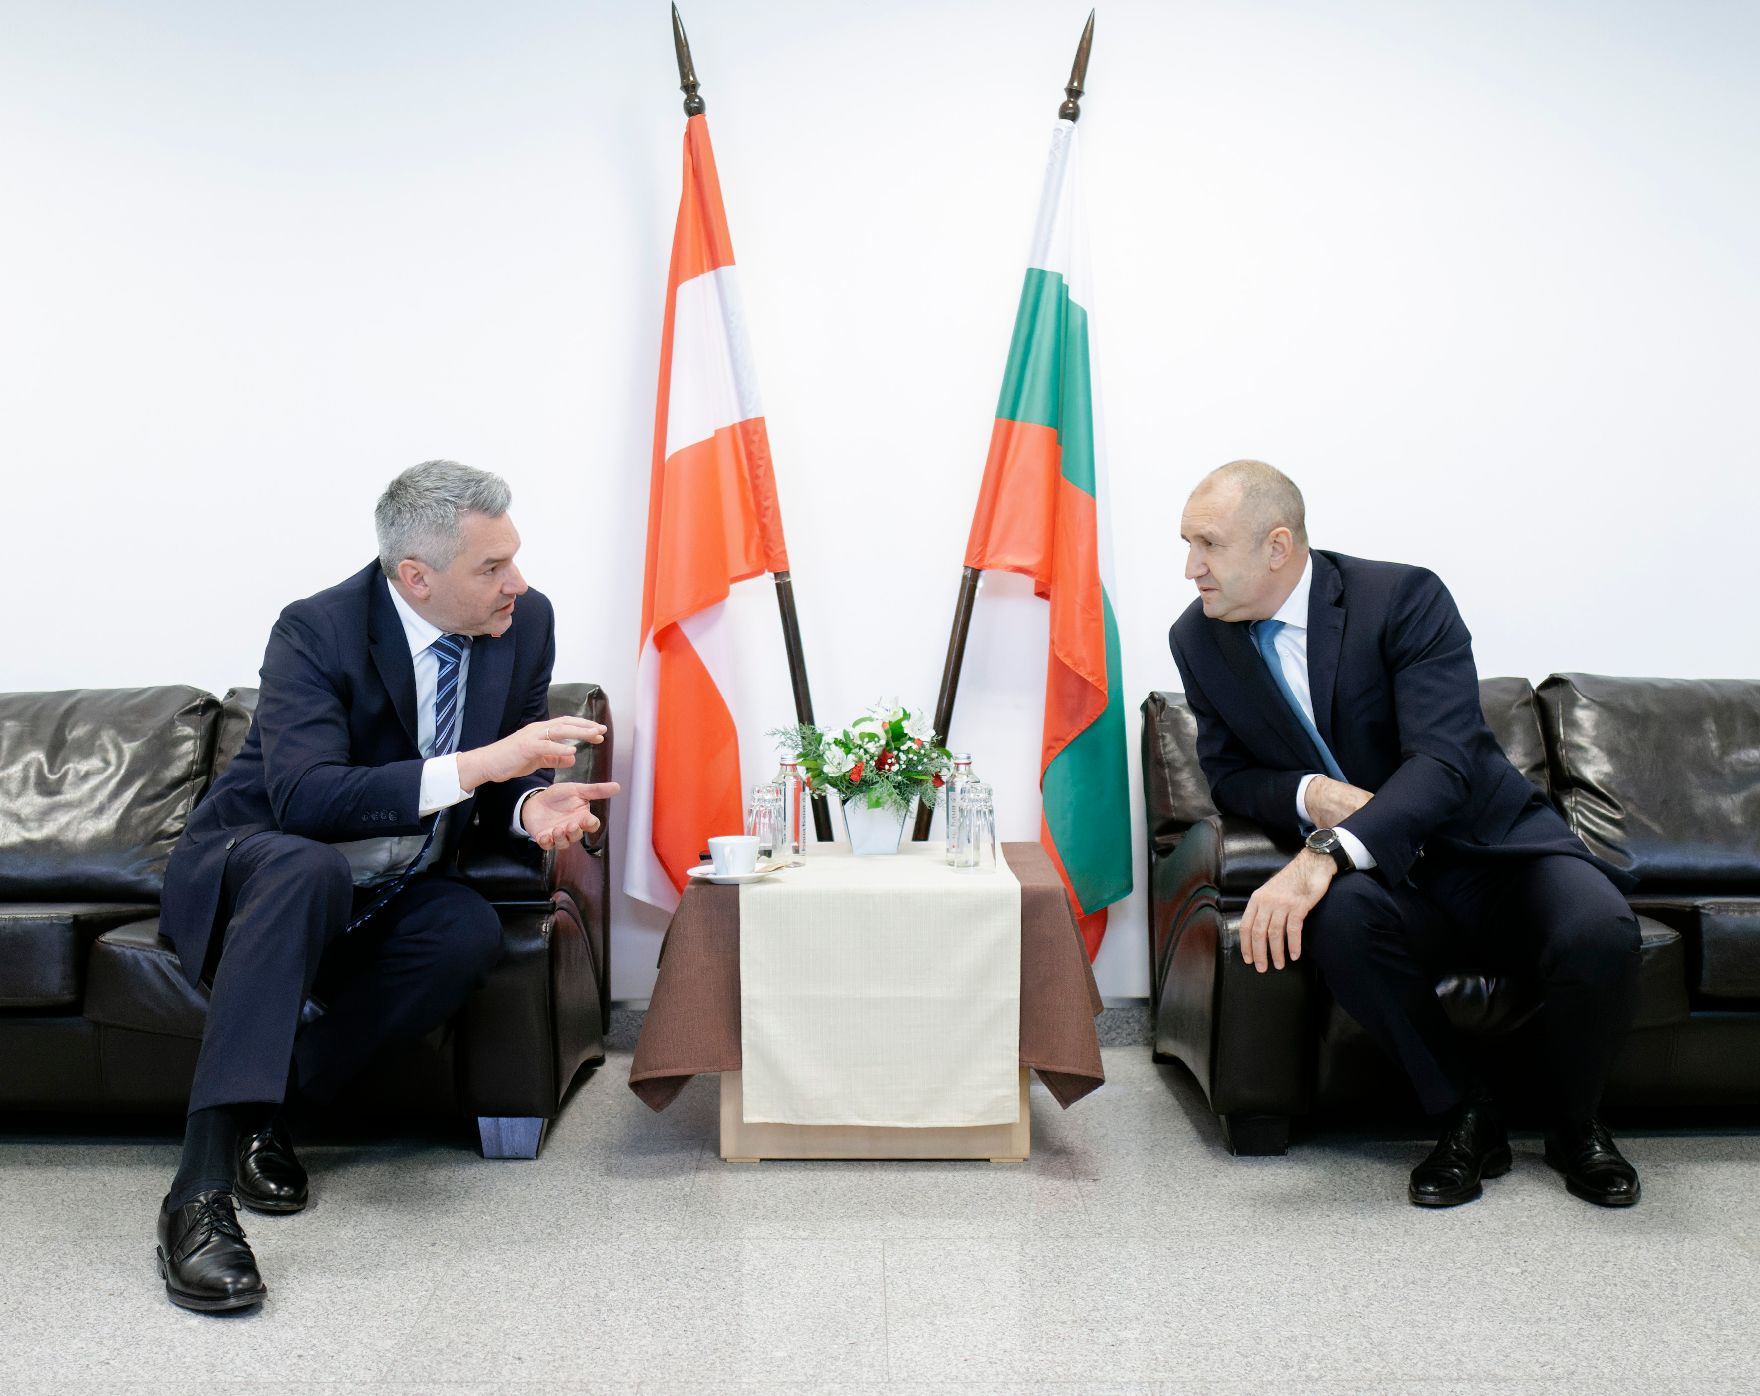 Am 23. Jänner 2023 reiste Bundeskanzler Karl Nehammer (l.) gemeinsam mit Innenminister Gerhard Karner zu einem Arbeitsbesuch nach Bulgarien. Im Bild mit dem bulgarischen Präsidenten Rumen Radew (r.).